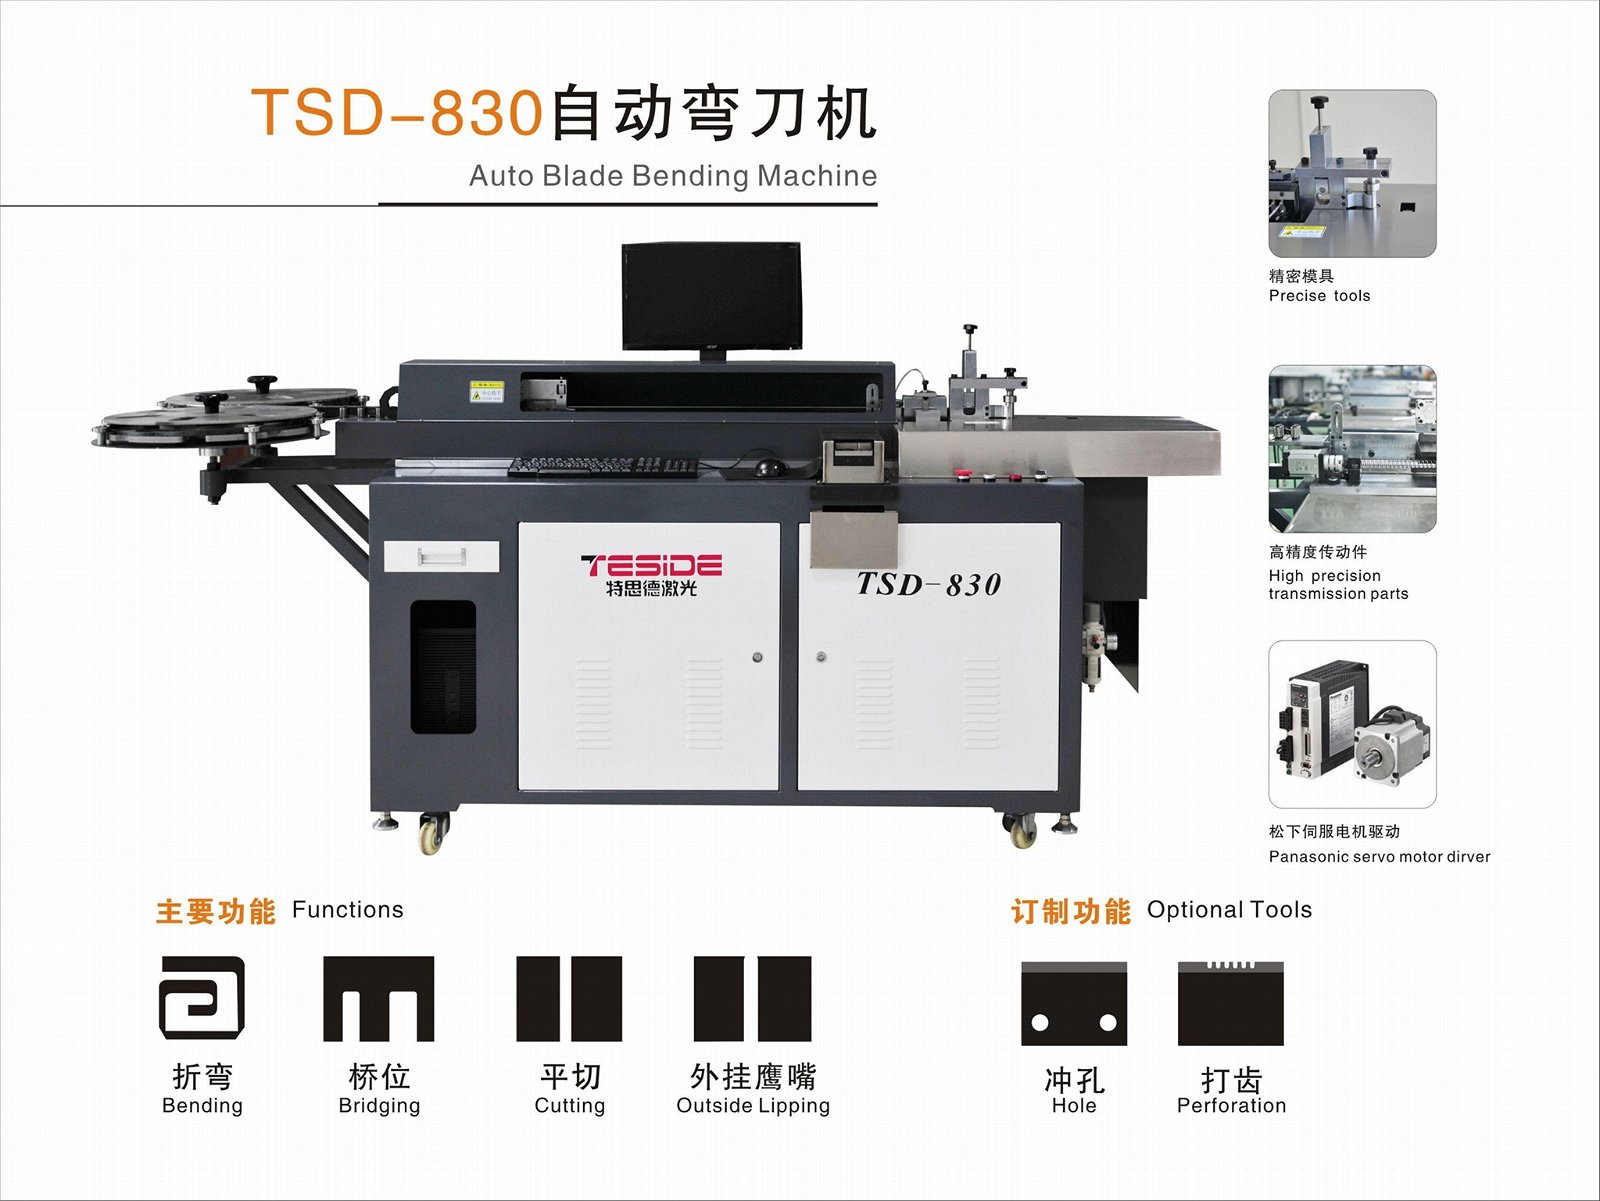 TSD-850 Auto Blade bending machine 2